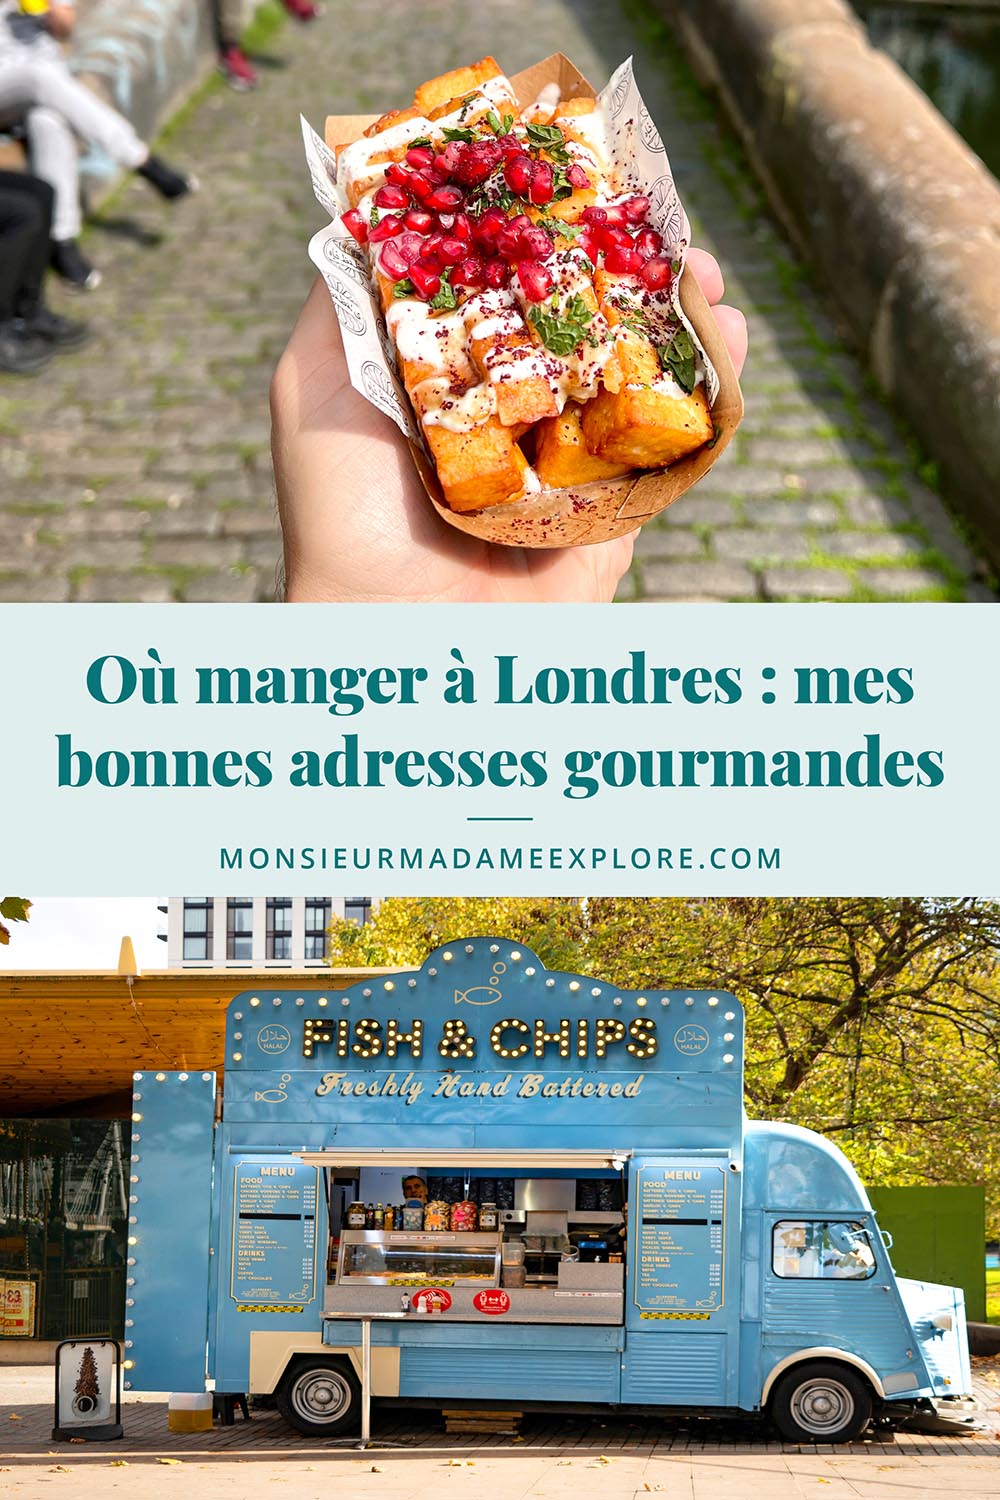 Où manger à Londres : mes bonnes adresses gourmandes, Monsieur+Madame Explore, Blogue de voyage, Angleterre, Royaume-Uni / Where to eat in London: my favorite restaurants, England, UK